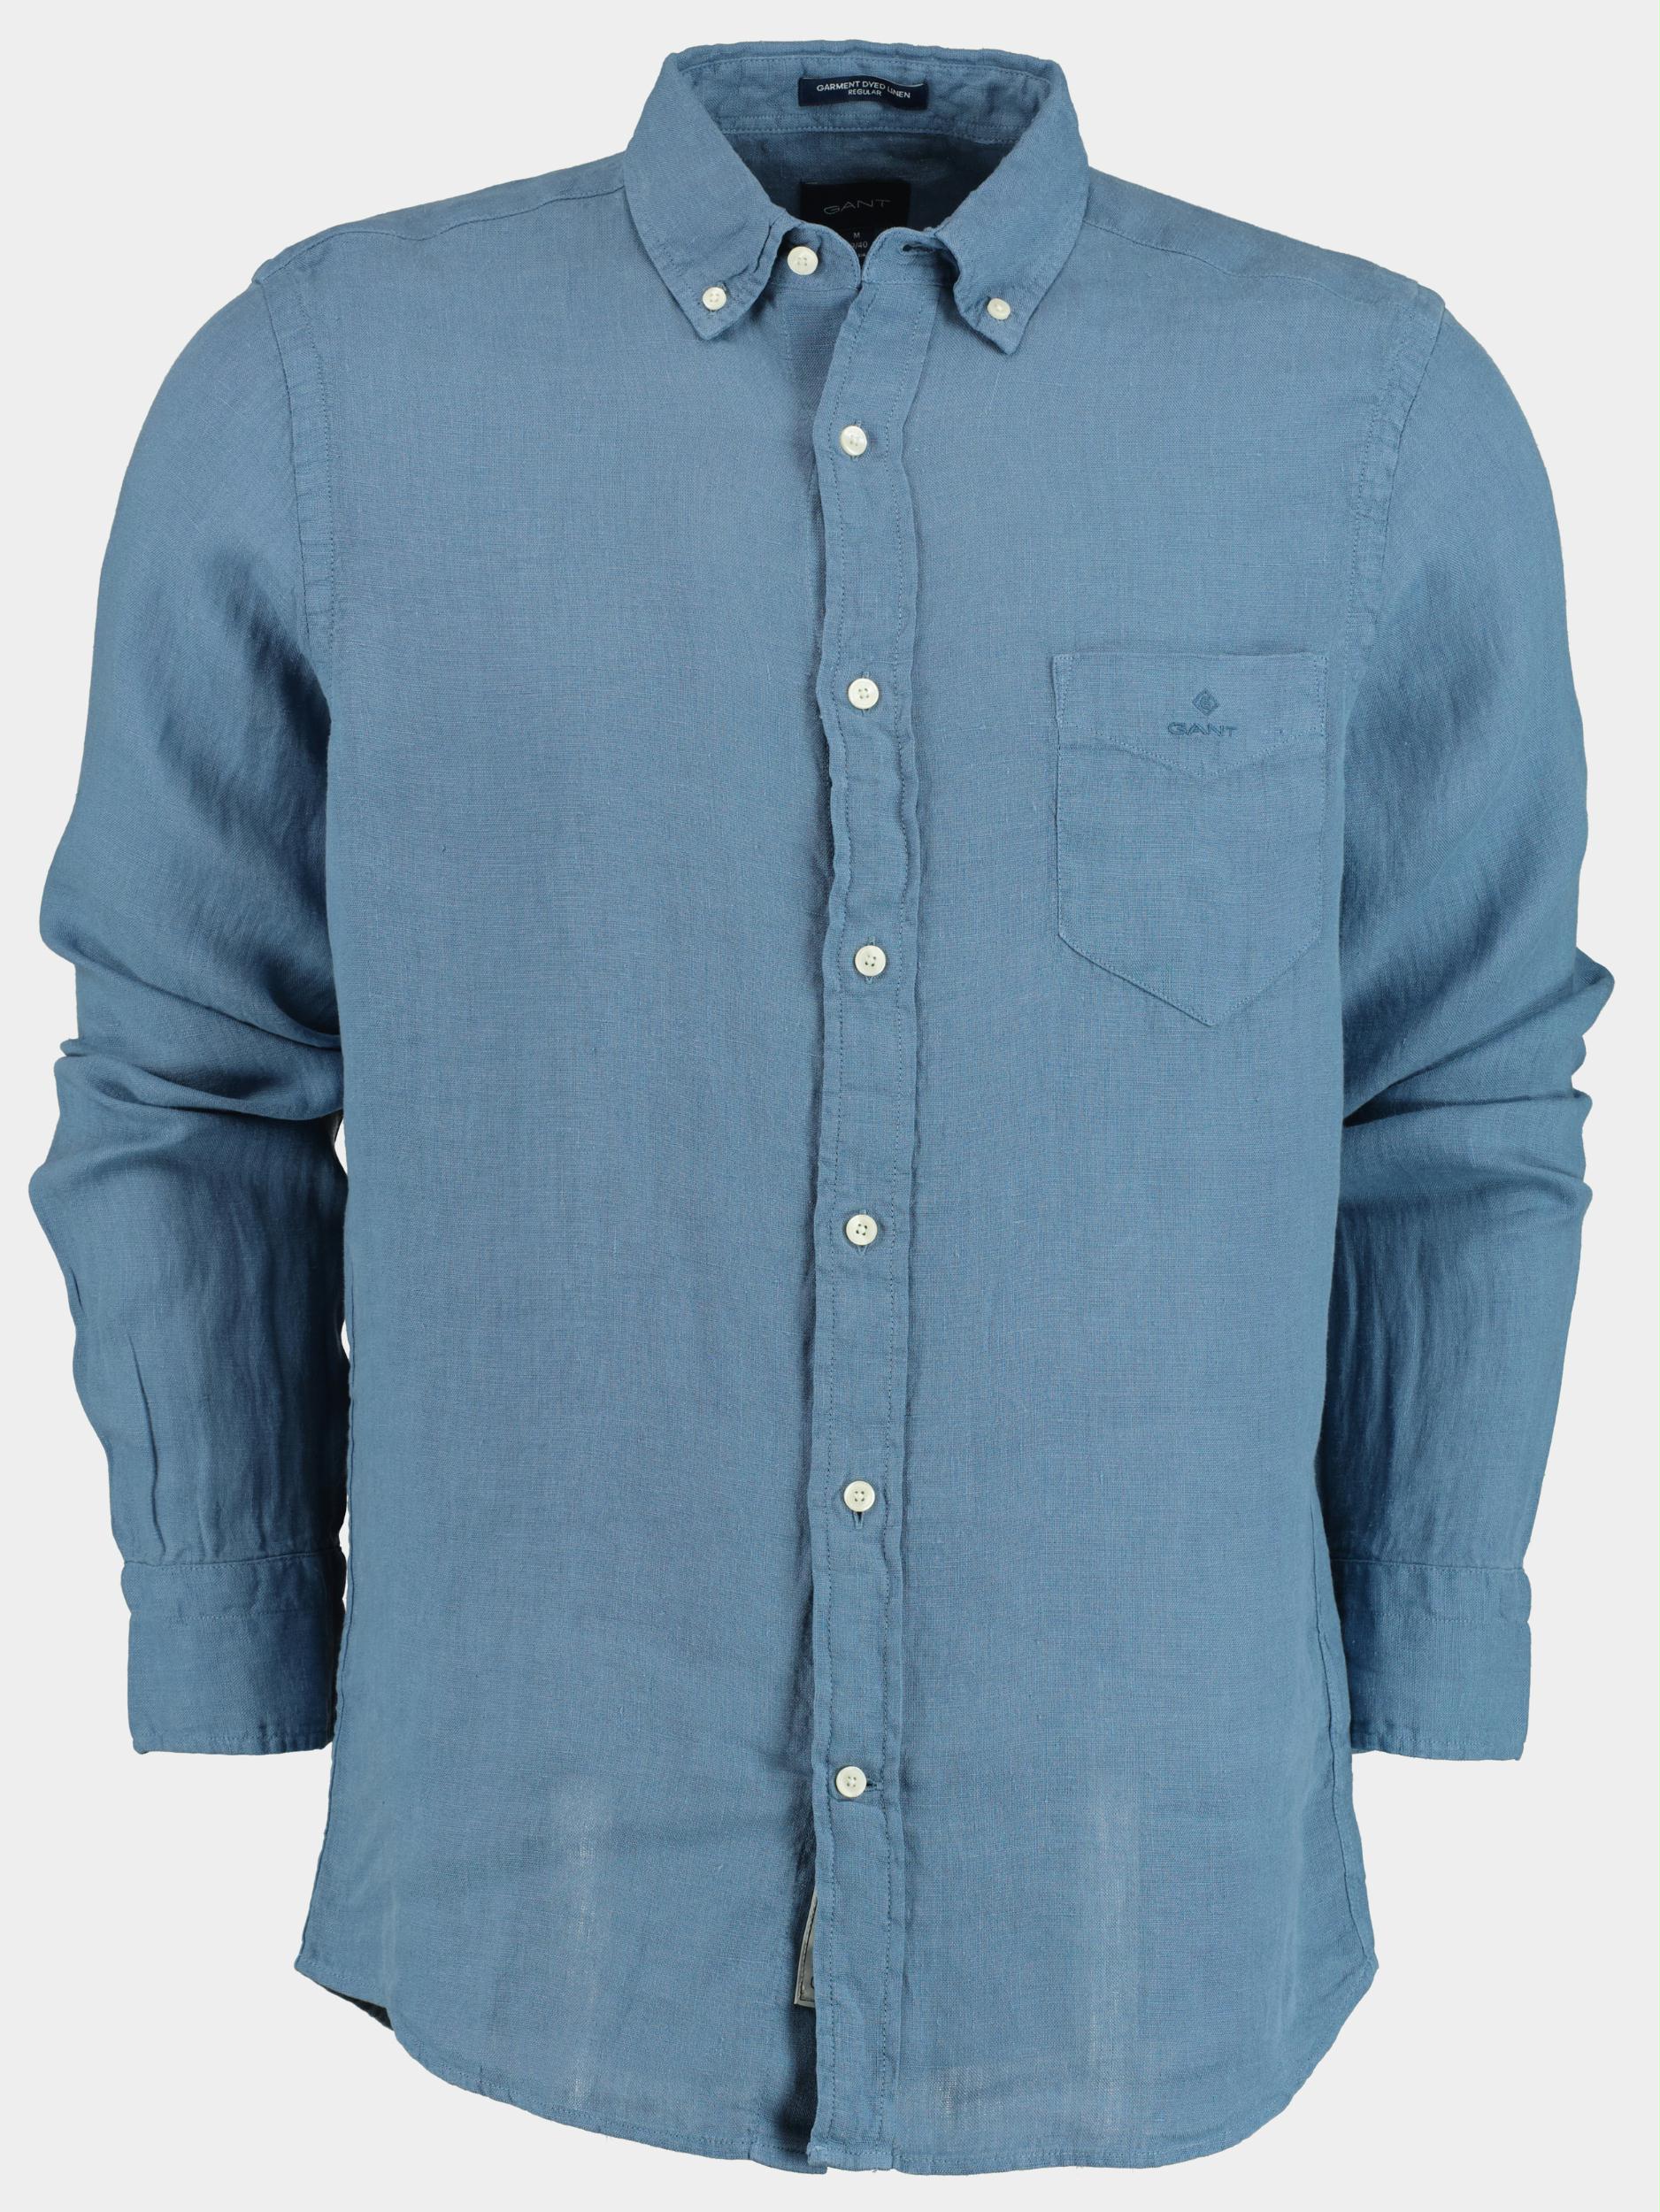 Gant Casual hemd lange mouw Blauw D2. Reg UT Gmnt Dyed Linen BD 3009560/464